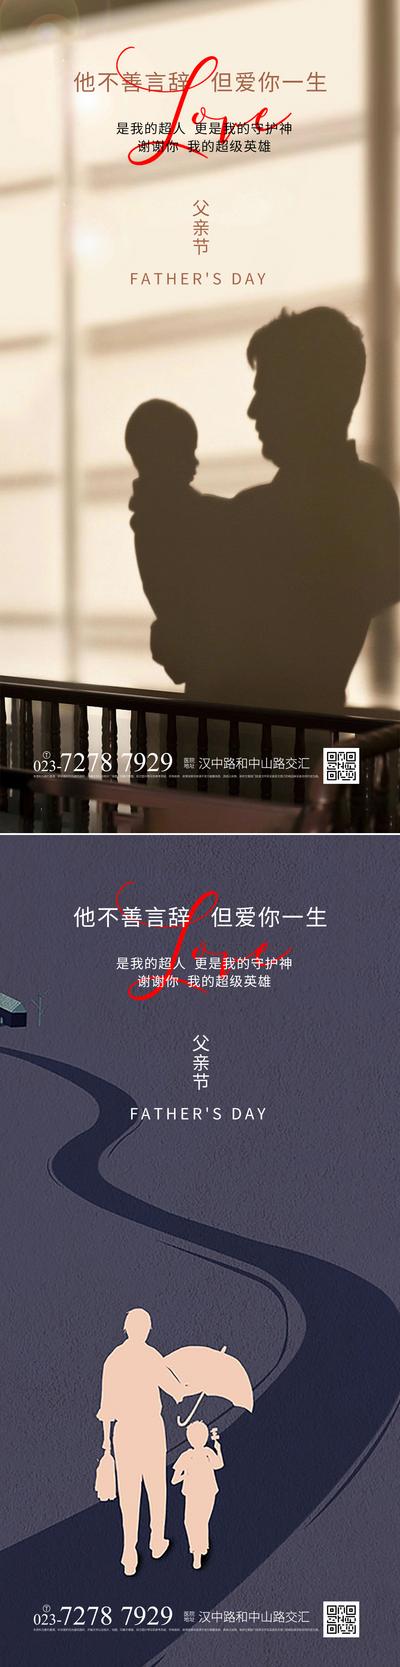 南门网 广告 海报 节日 父亲节 系列 温馨 投影 背光